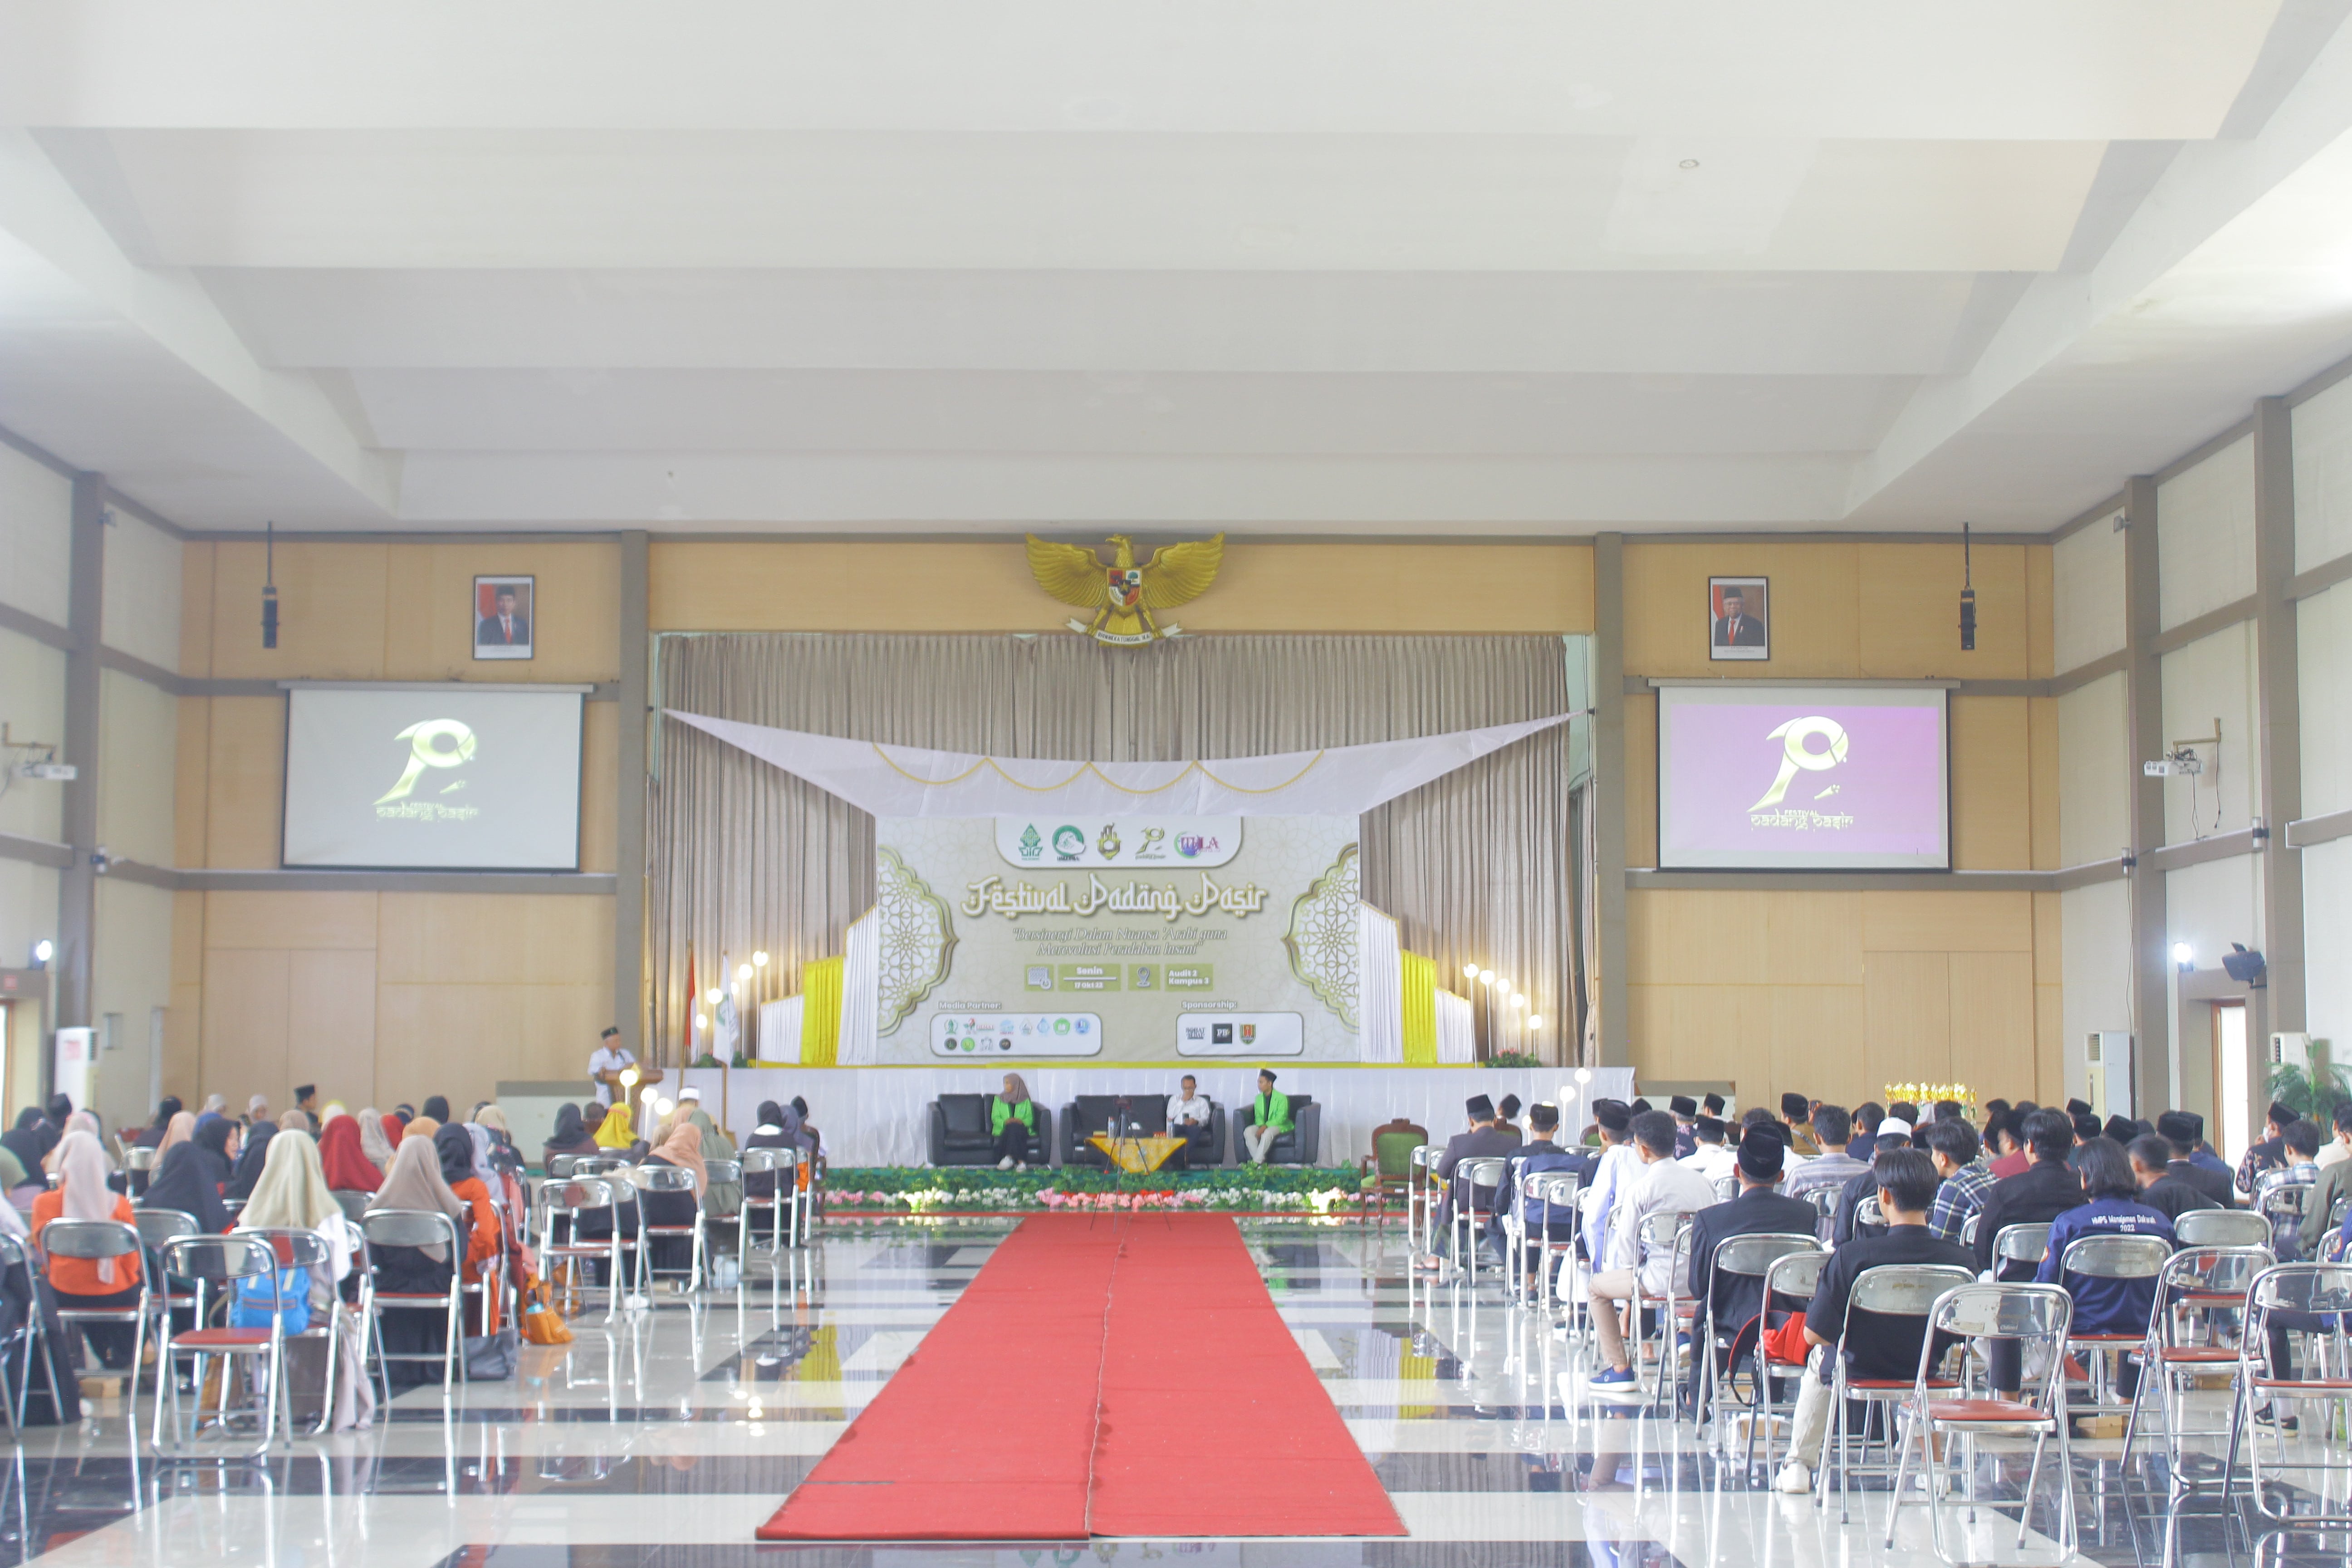 Festival Padang Pasir 2022